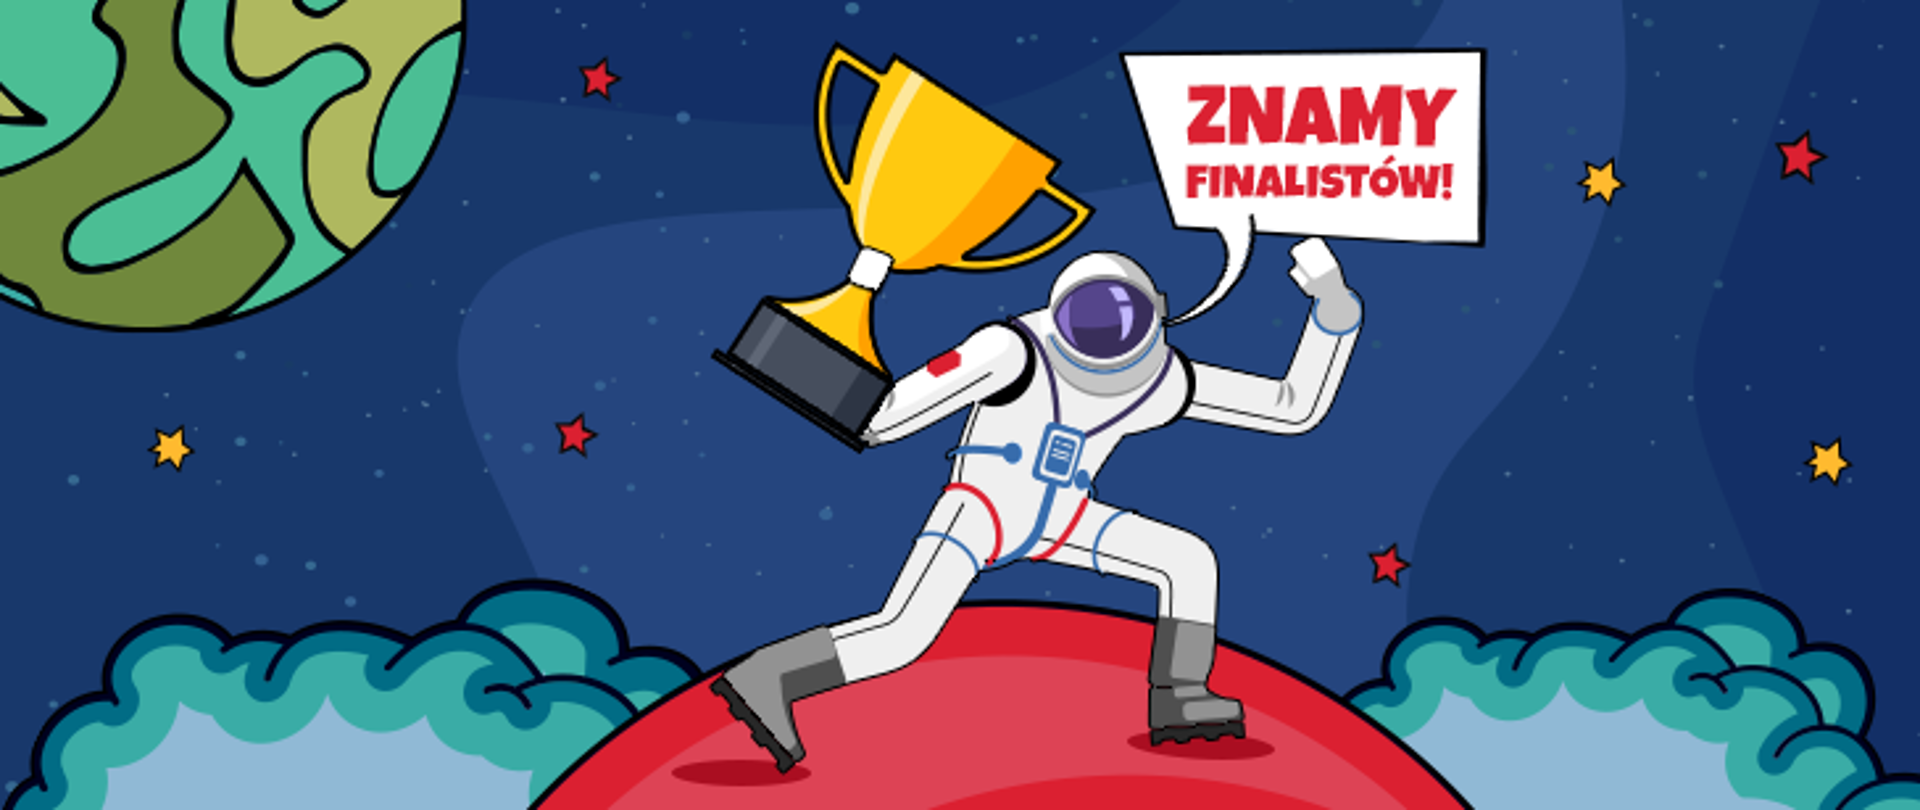 Grafika - przestrzeń kosmiczna, kosmonauta trzyma w ręce puchar zwycięstwa, chmurka z tekstem "znamy finalistów".